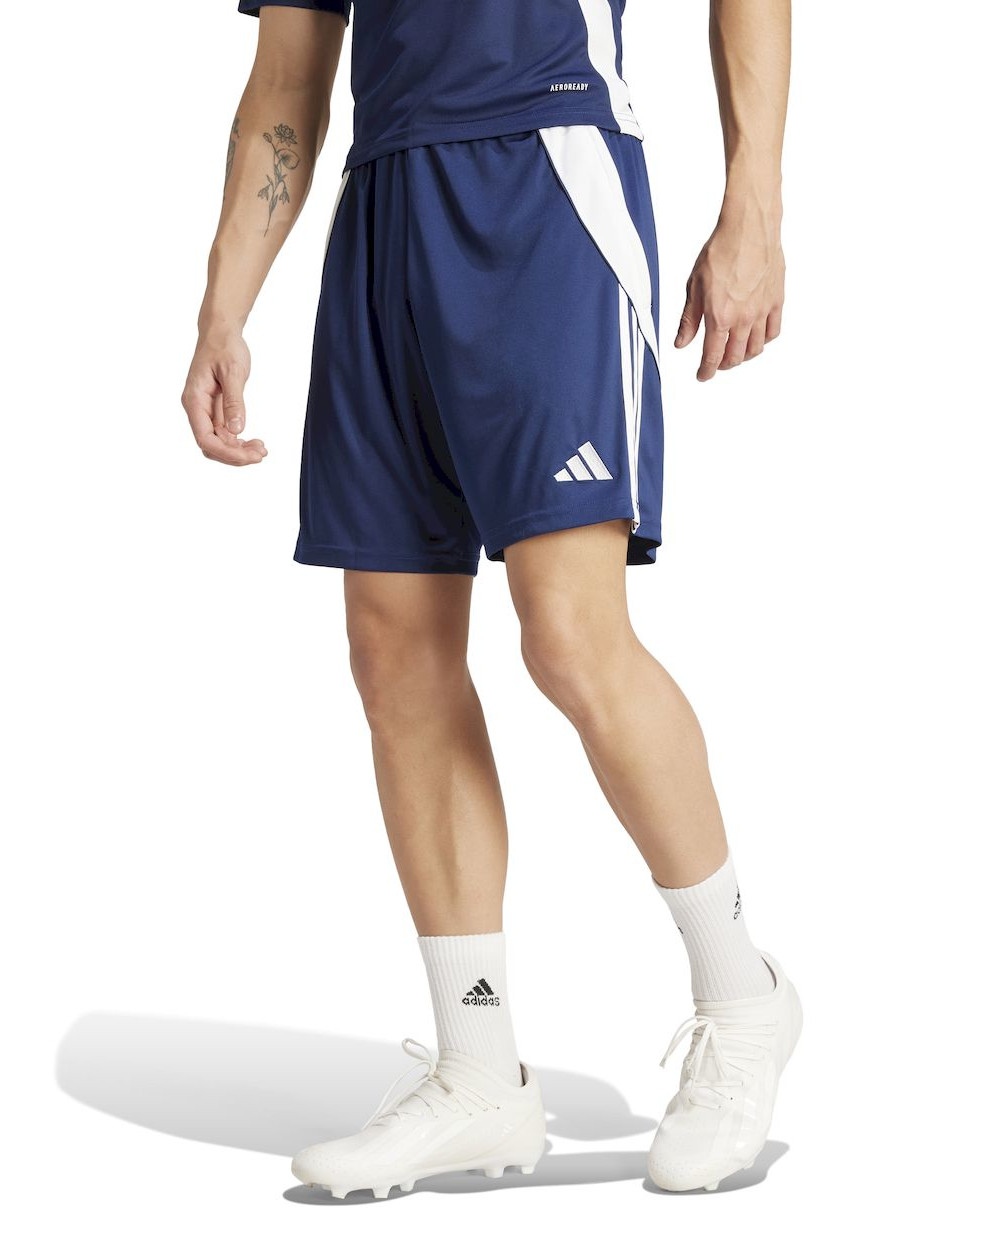  Pantaloncini Shorts UOMO Adidas Tiro 24 Blu TASCHE con ZIP Poliestere Aeroready